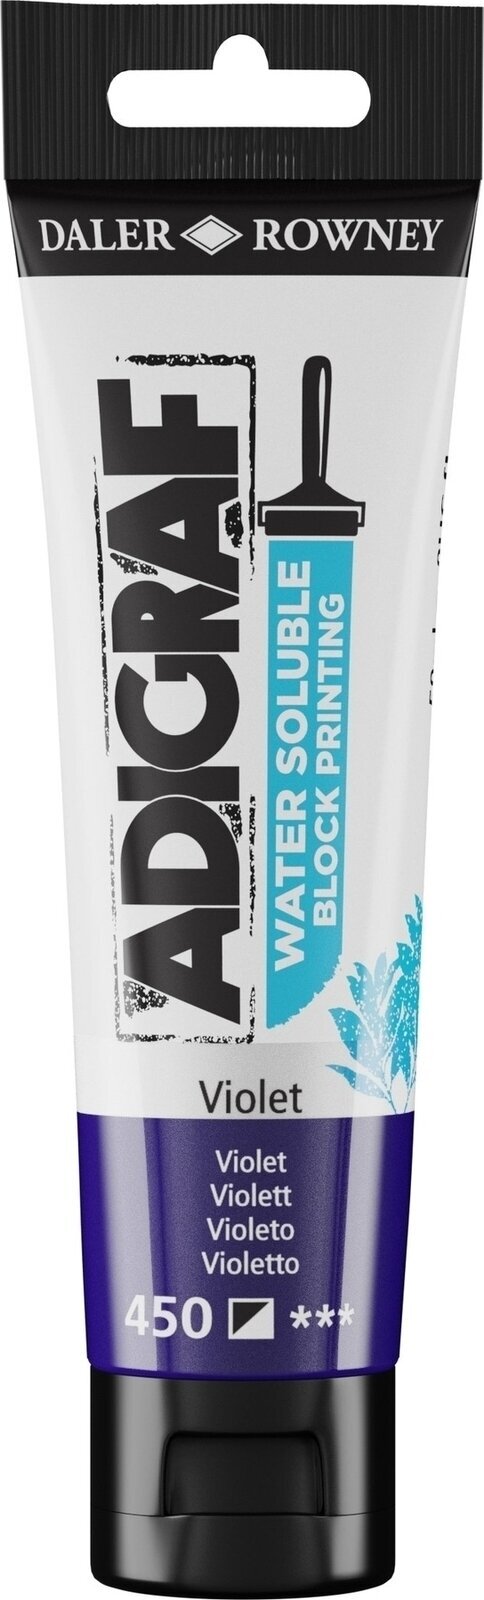 Boja za linorez Daler Rowney Adigraf Block Printing Water Soluble Colour Boja za linorez Violet 59 ml